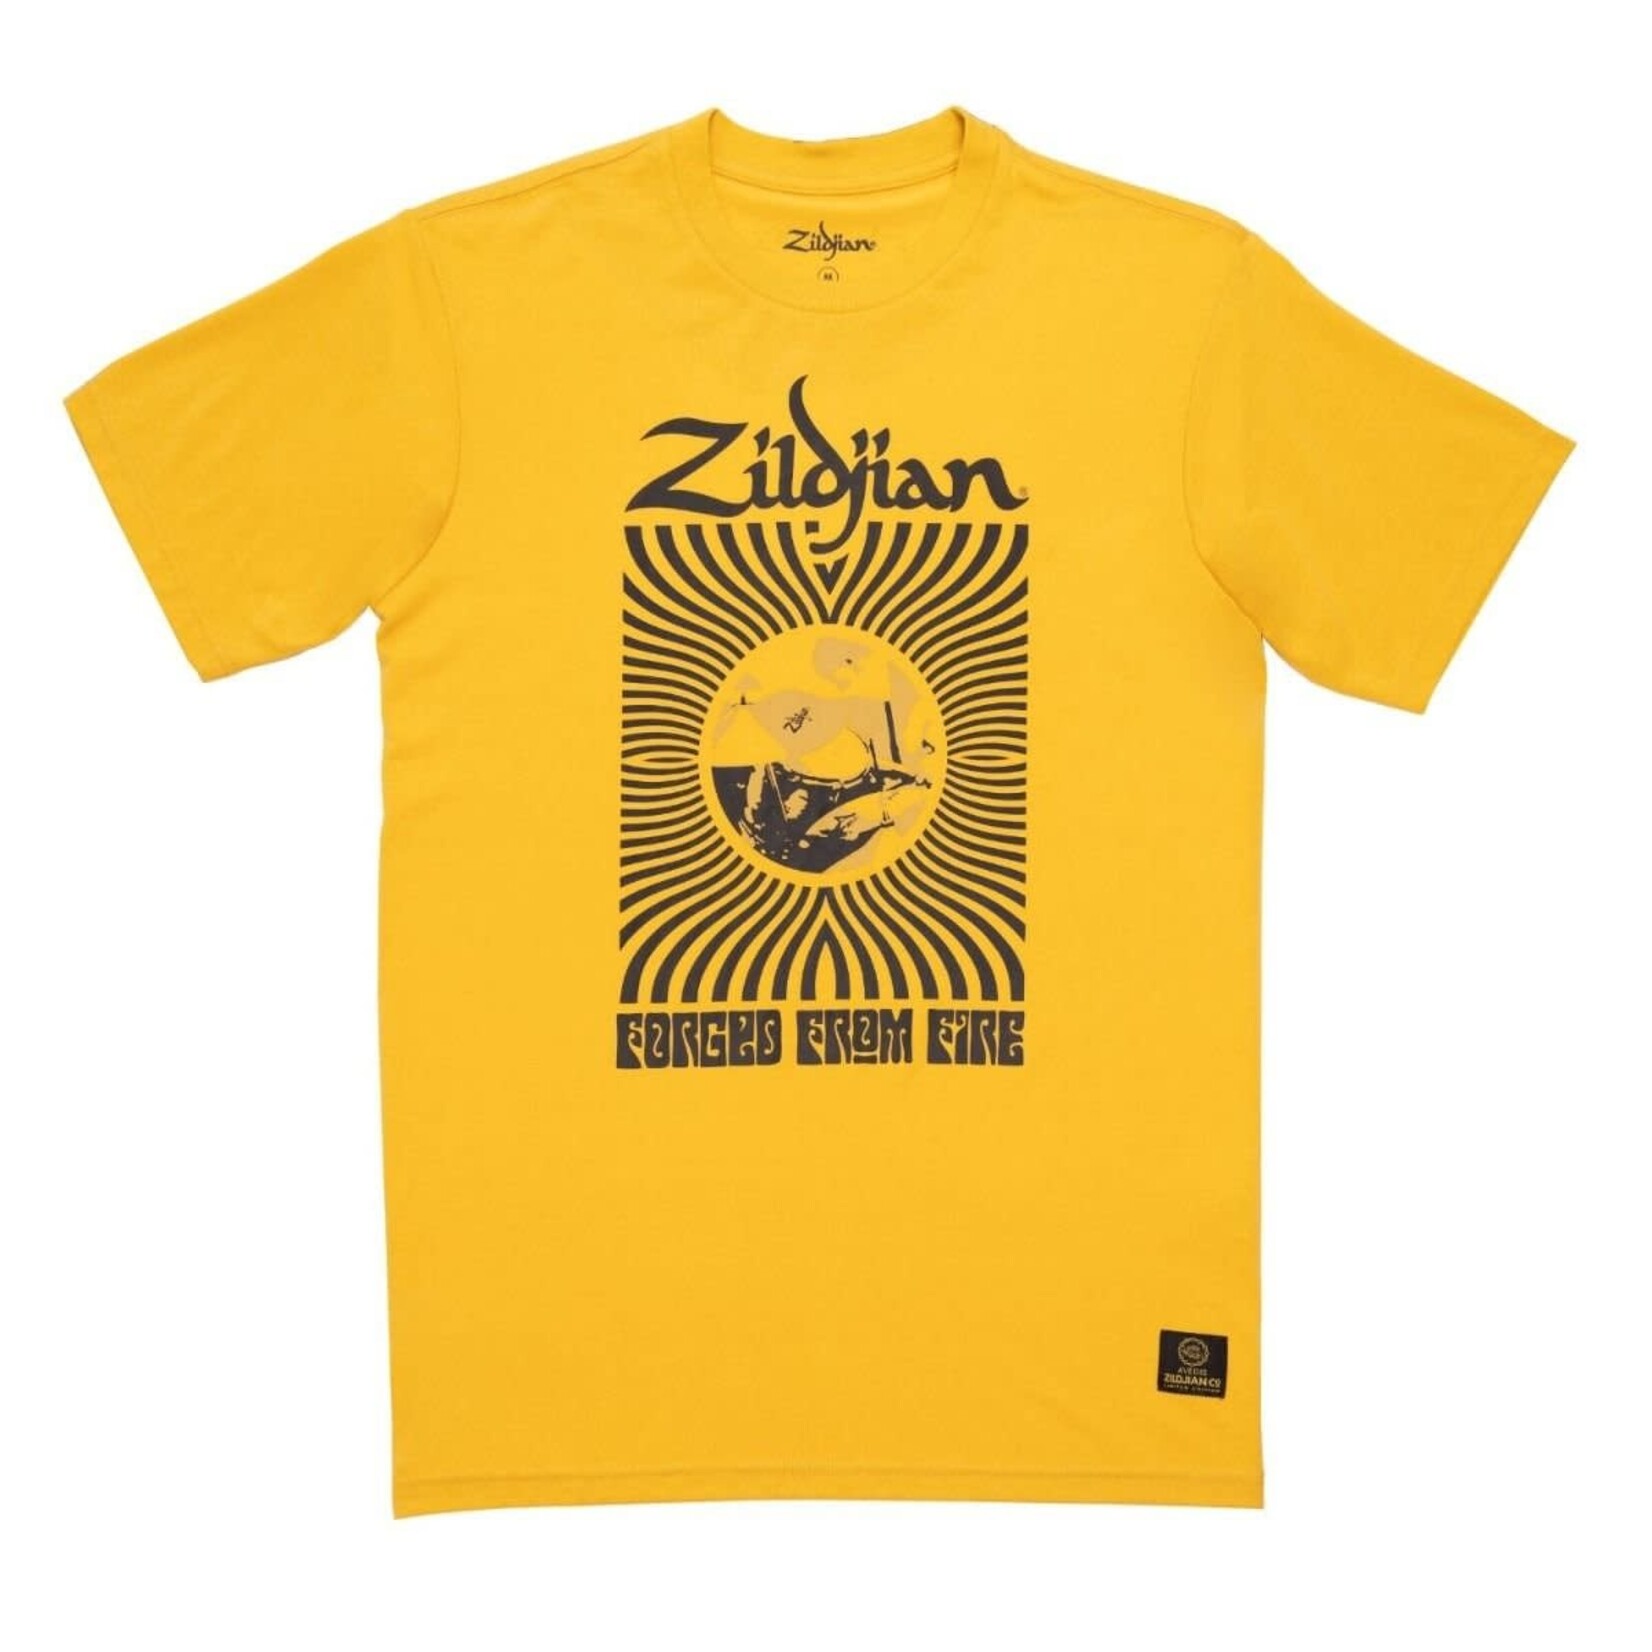 Zildjian Zildjian 400th Anniversary Yellow 60s Rock Shirt XL